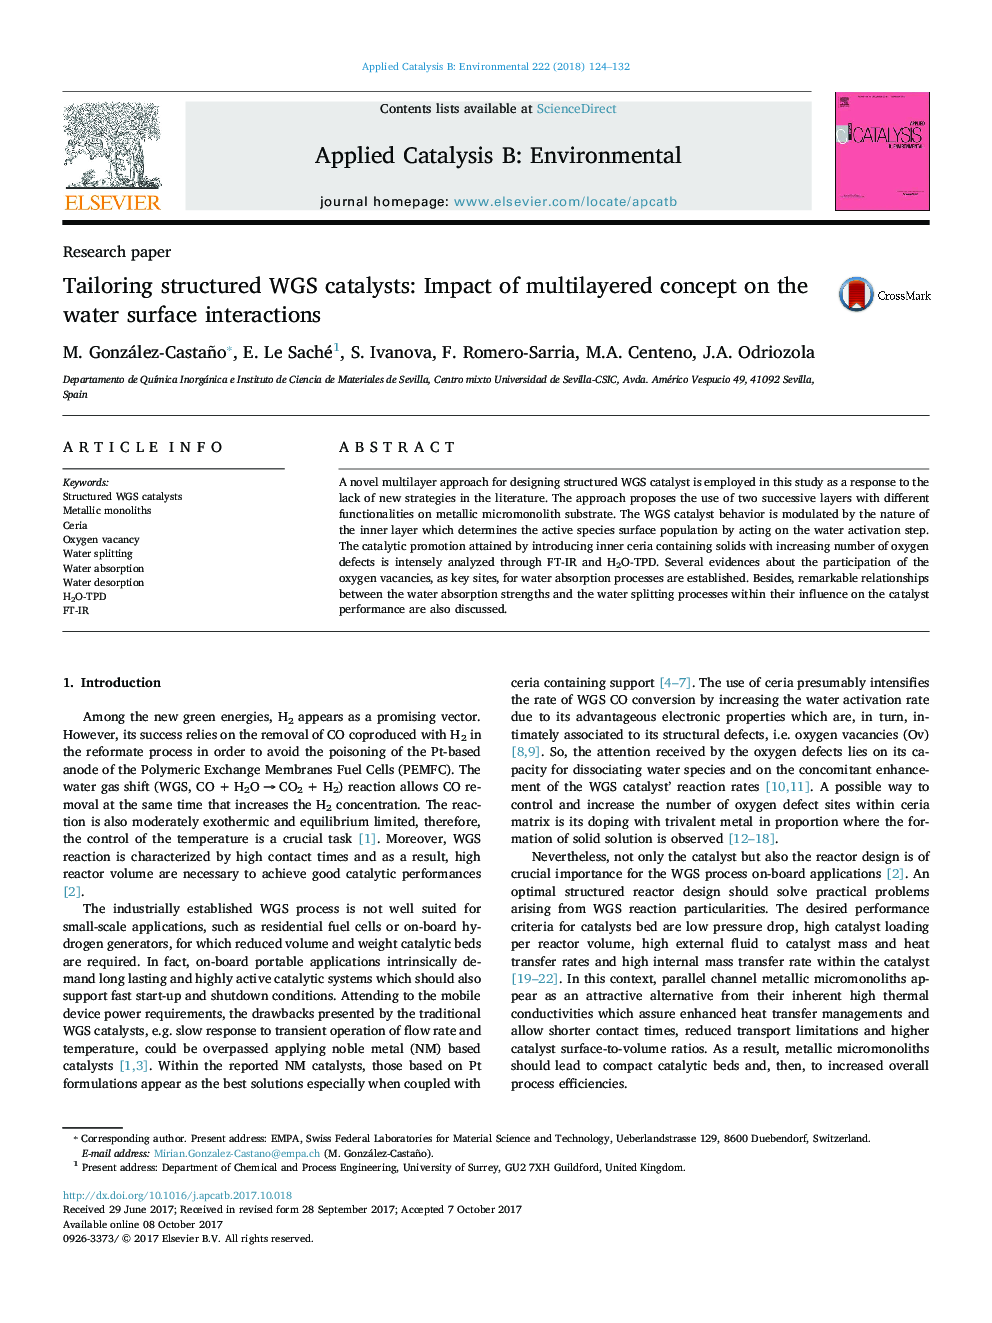 مقاله پژوهشی استفاده از کاتالیزورهای WGS ساختاری: تاثیر مفهوم چند لایه بر روی تعاملات سطحی آب